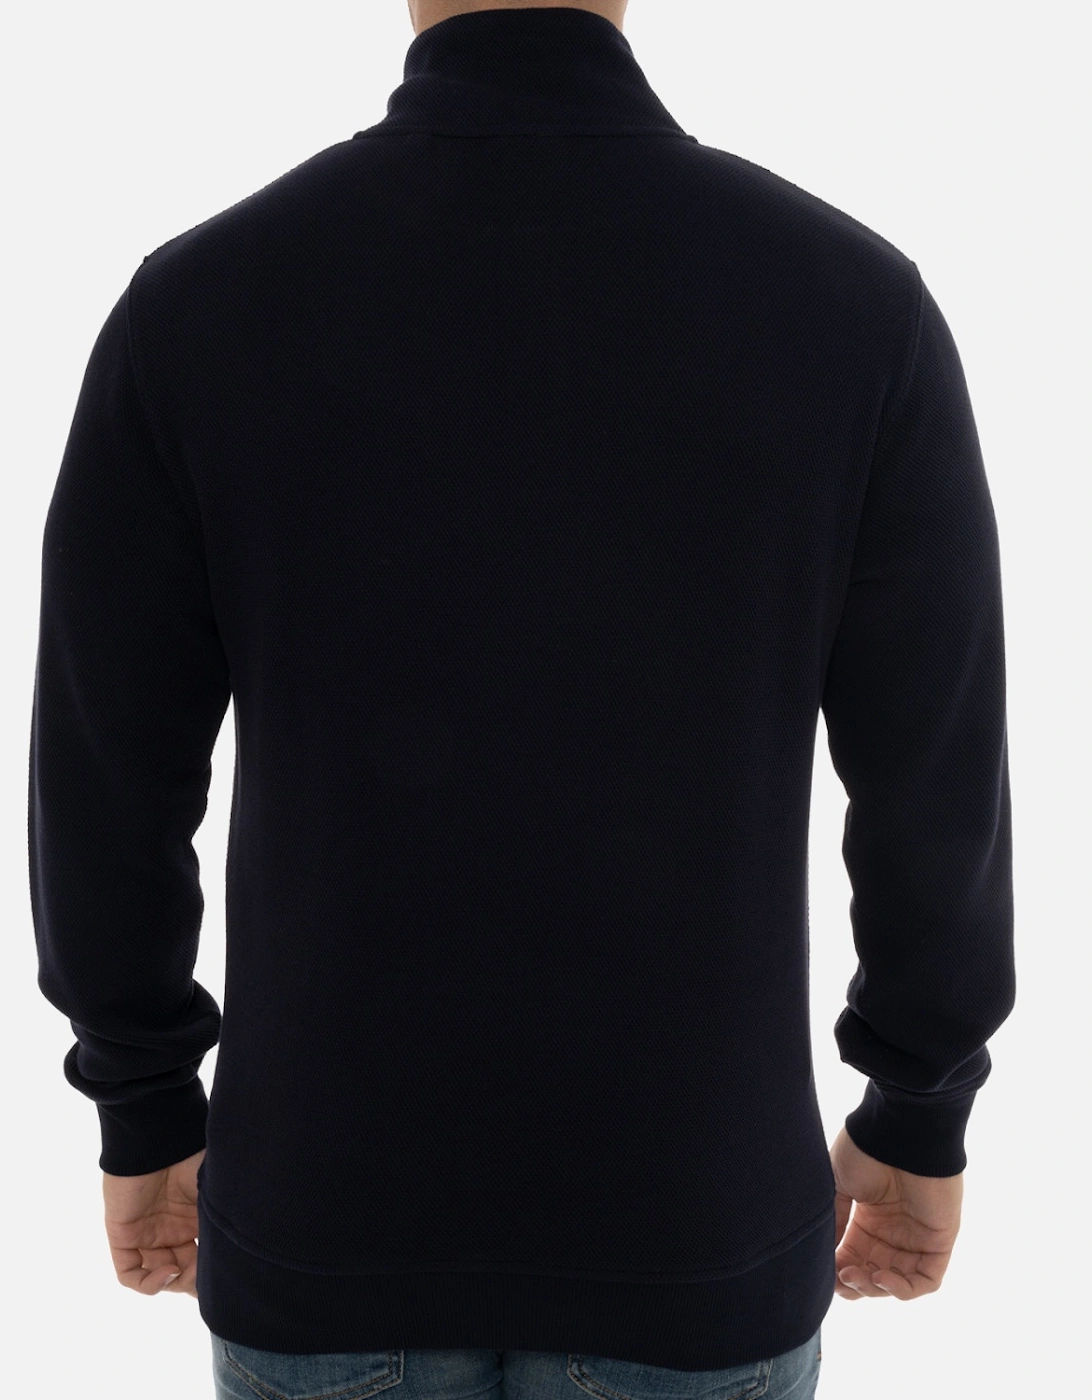 Mens Waffle Texture Half Zip Sweatshirt (Navy)